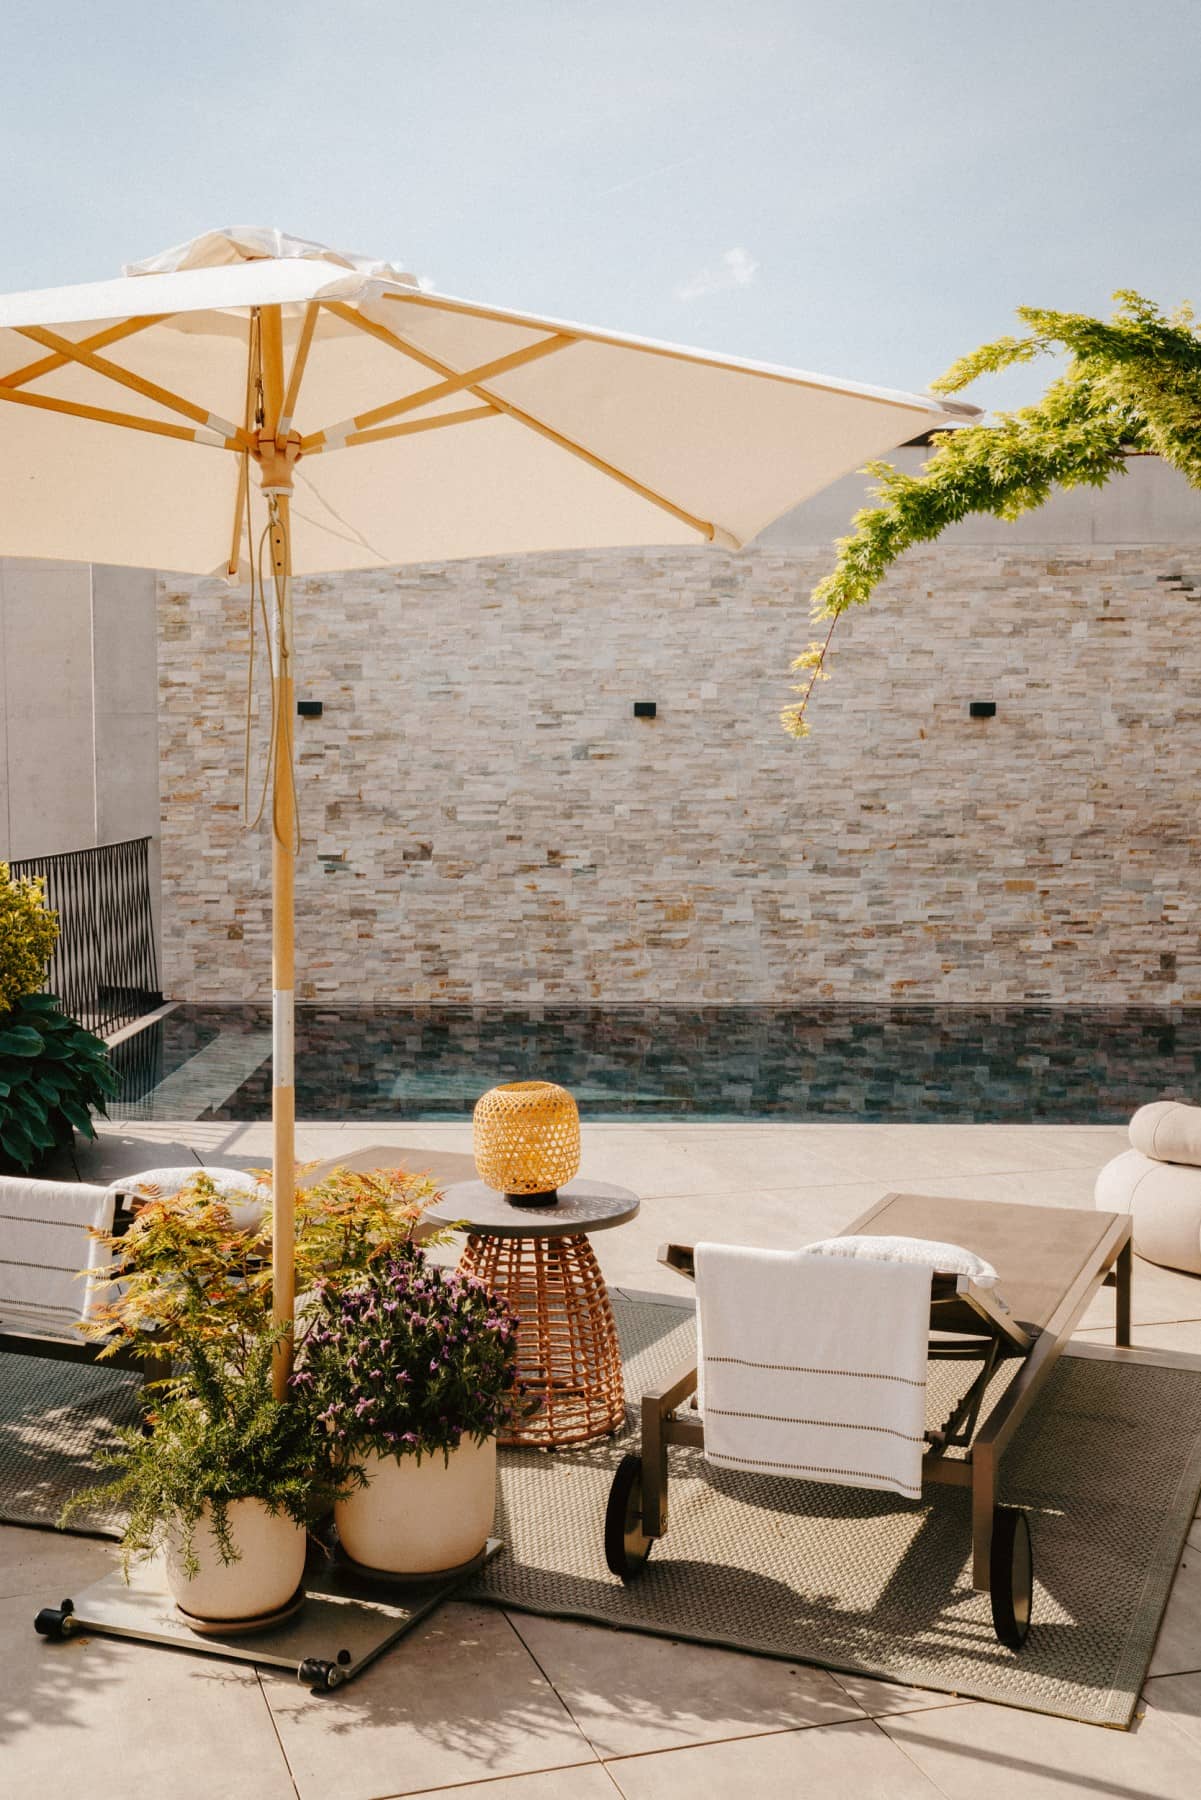 Pool-Design auf Terrasse mit zwei Liegestühle und Sonnenschirm